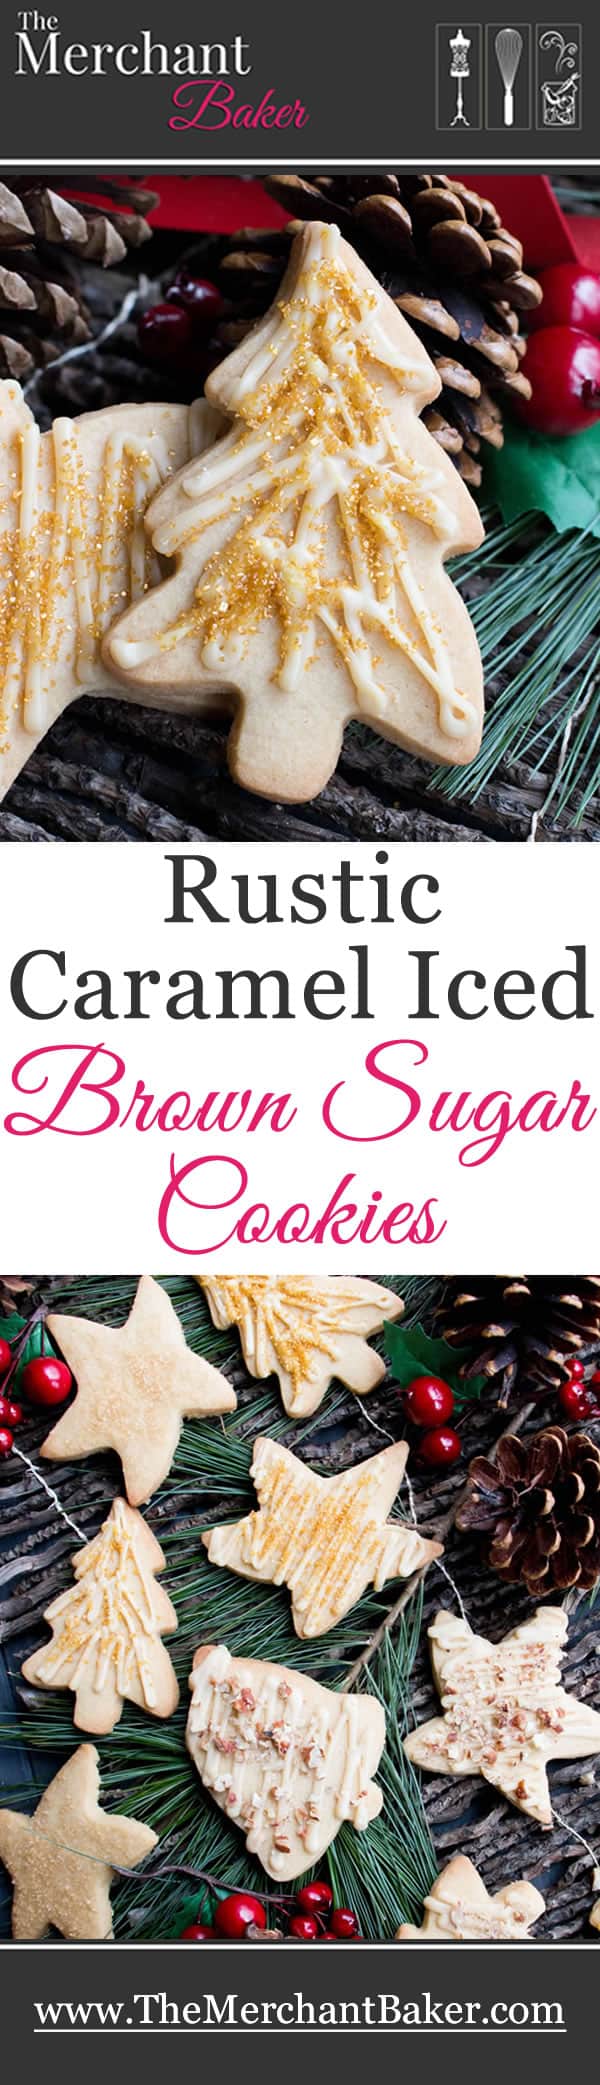 Rustic Caramel Iced Brown Sugar Cookies